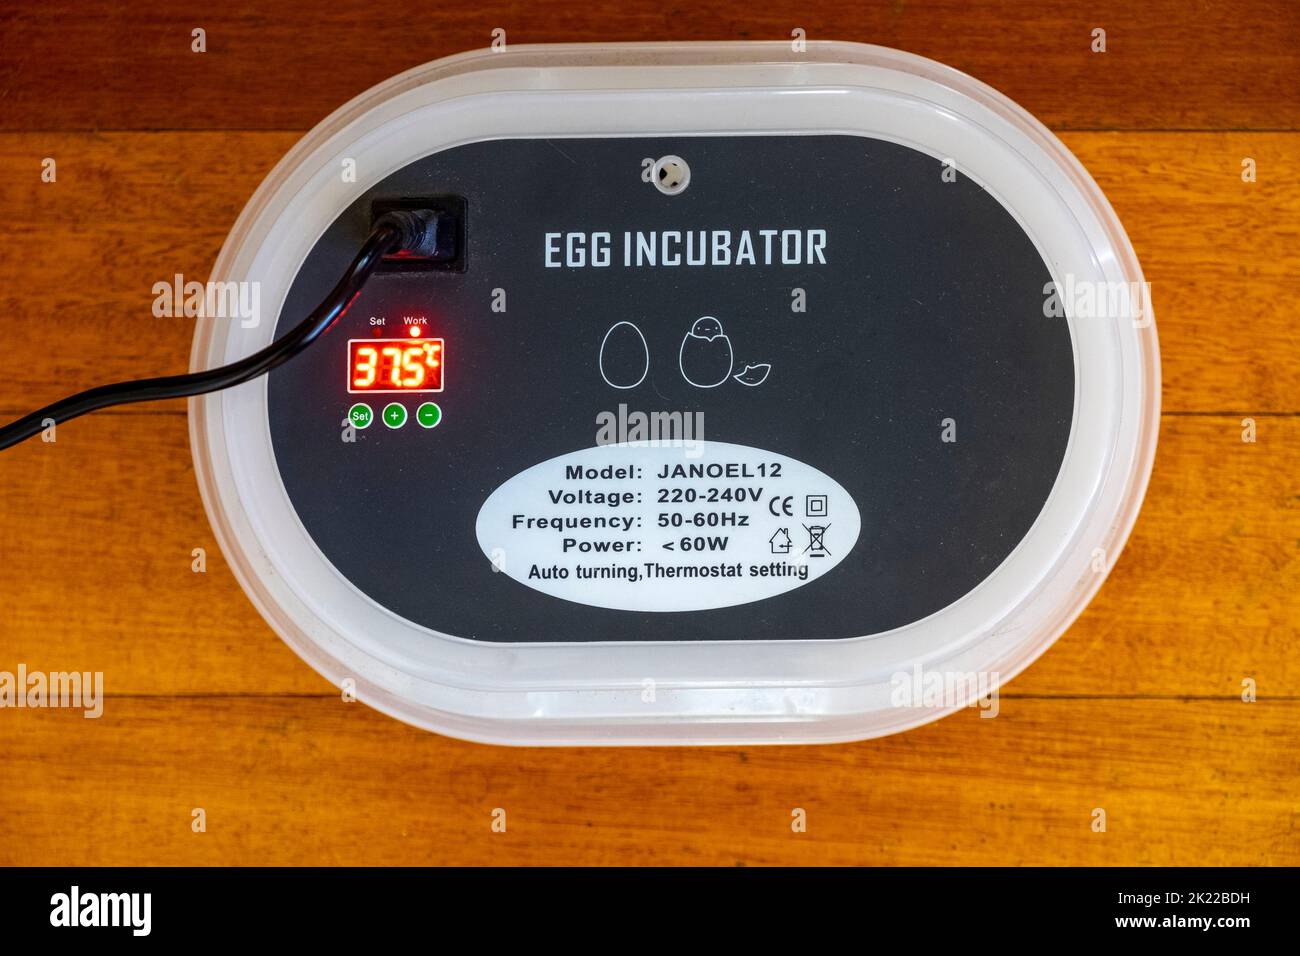 incubateur électrique de 220-240 volts avec contrôle de la température et mécanisme de rotation automatique des œufs indiquant la température d'incubation idéale pour les poulets de 37,5 degrés Banque D'Images